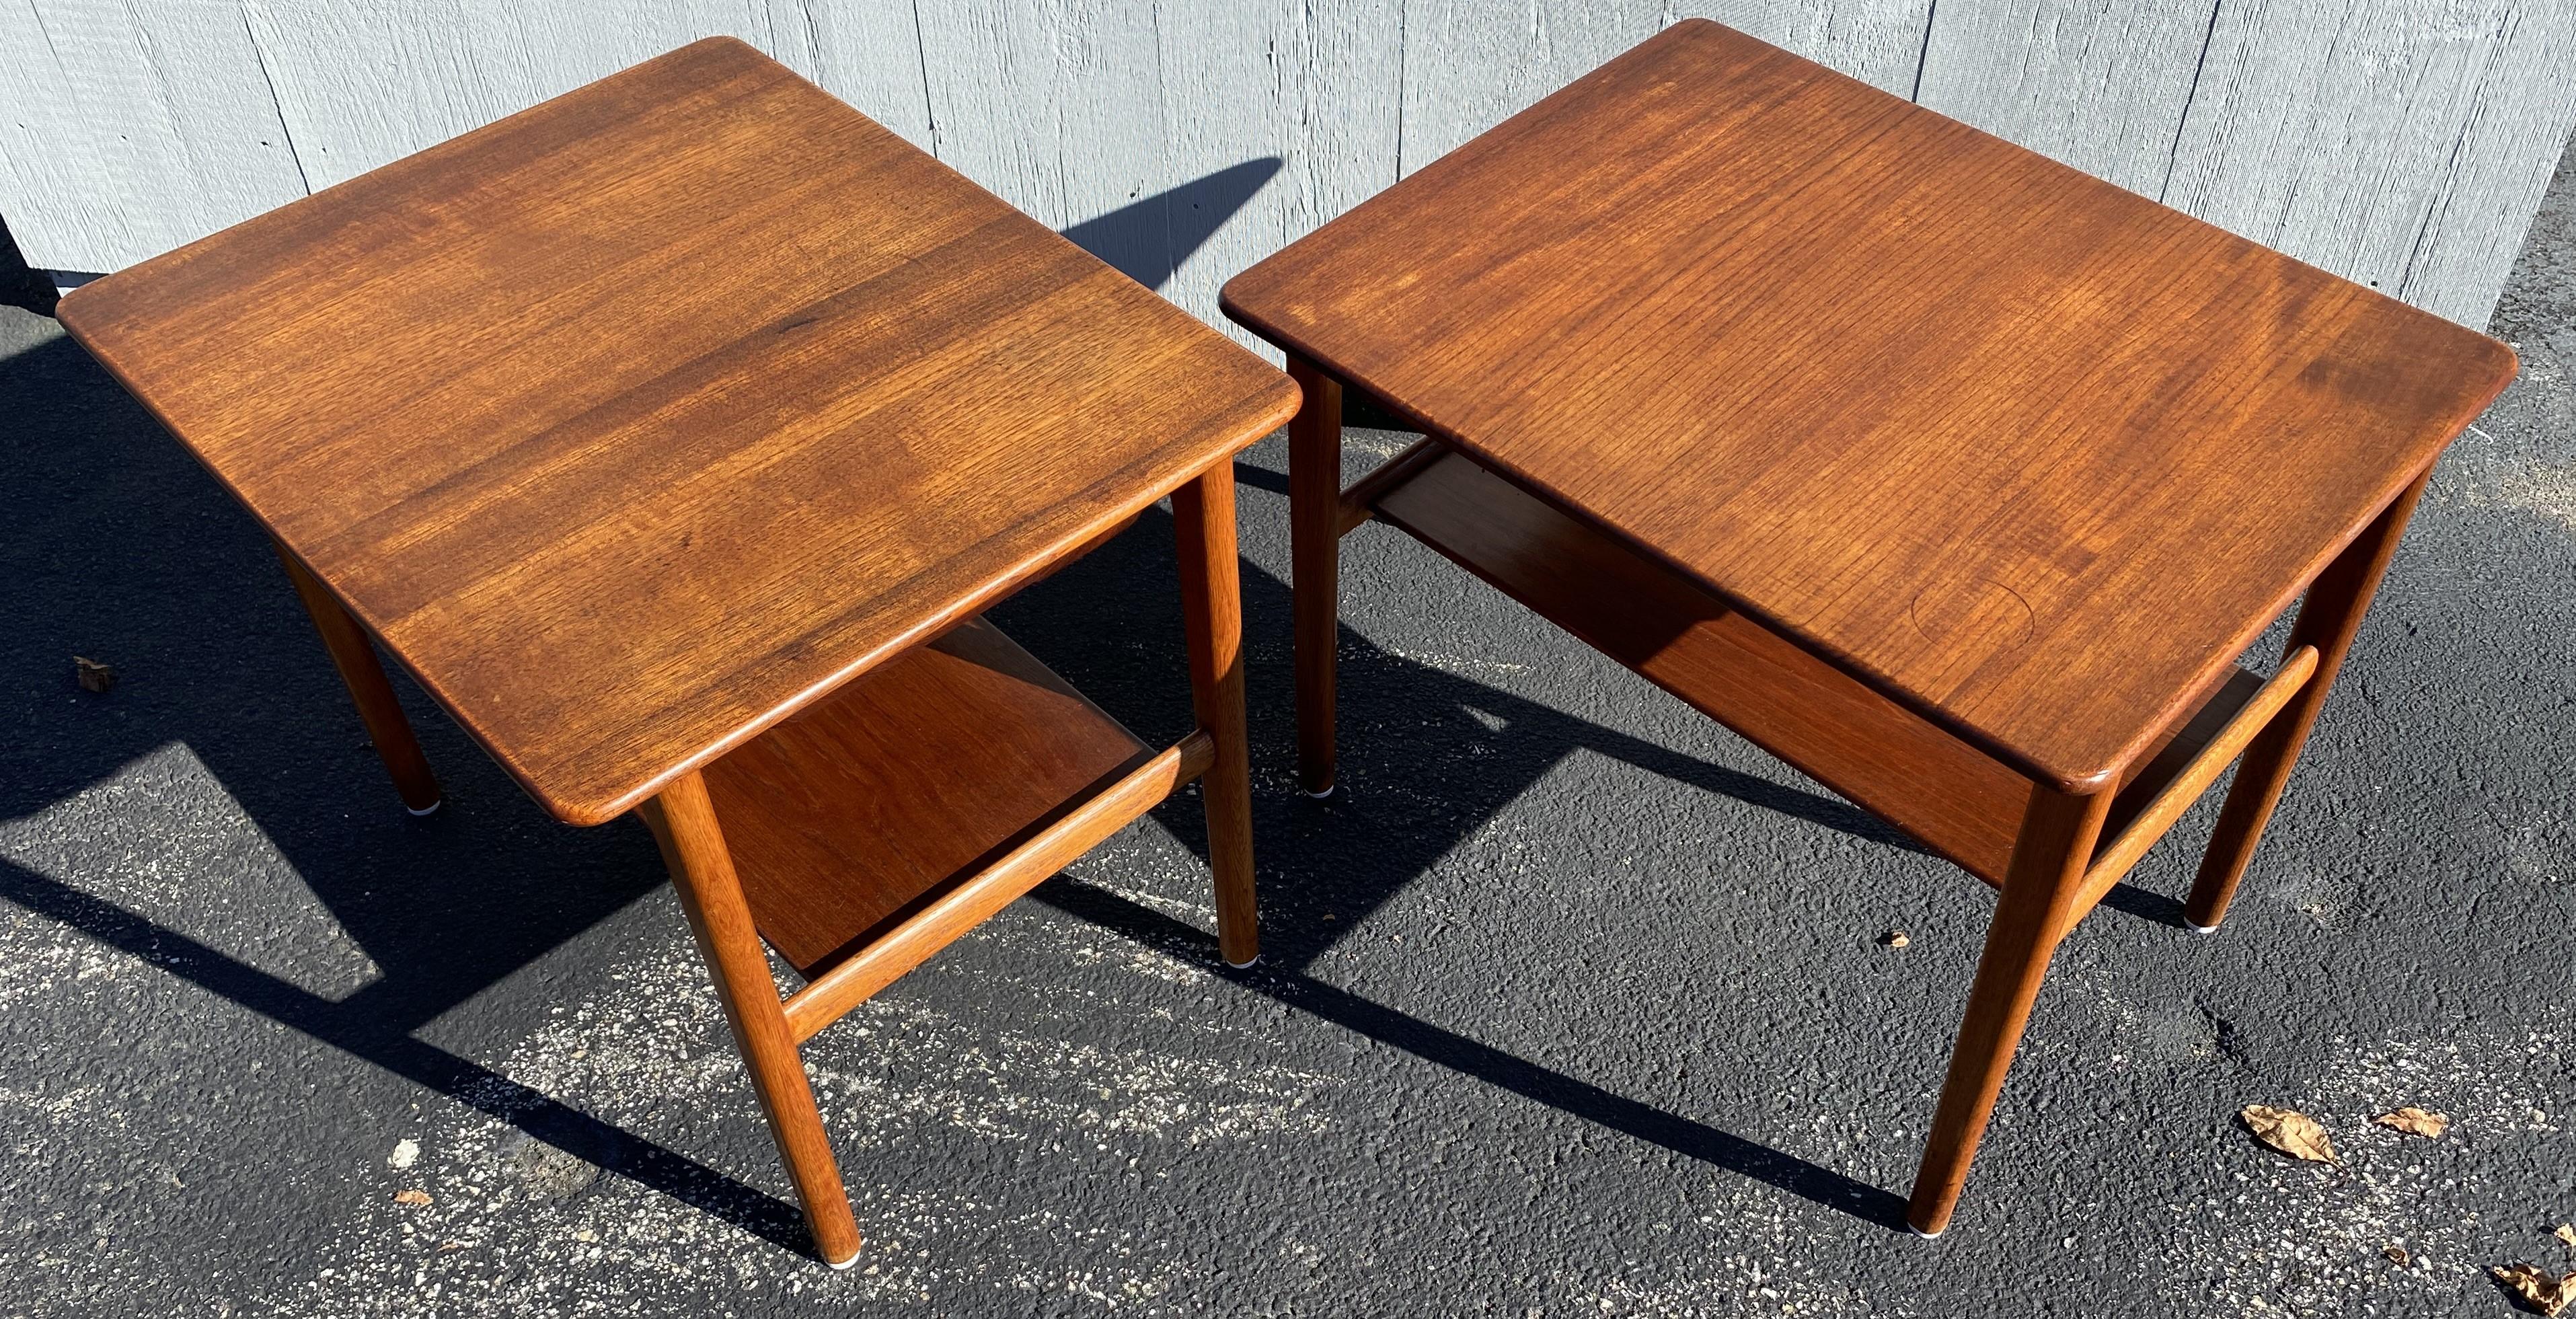 Hand-Carved Johannes Hansen Hans Wegner Danish Modern Teak Tables with Trays For Sale